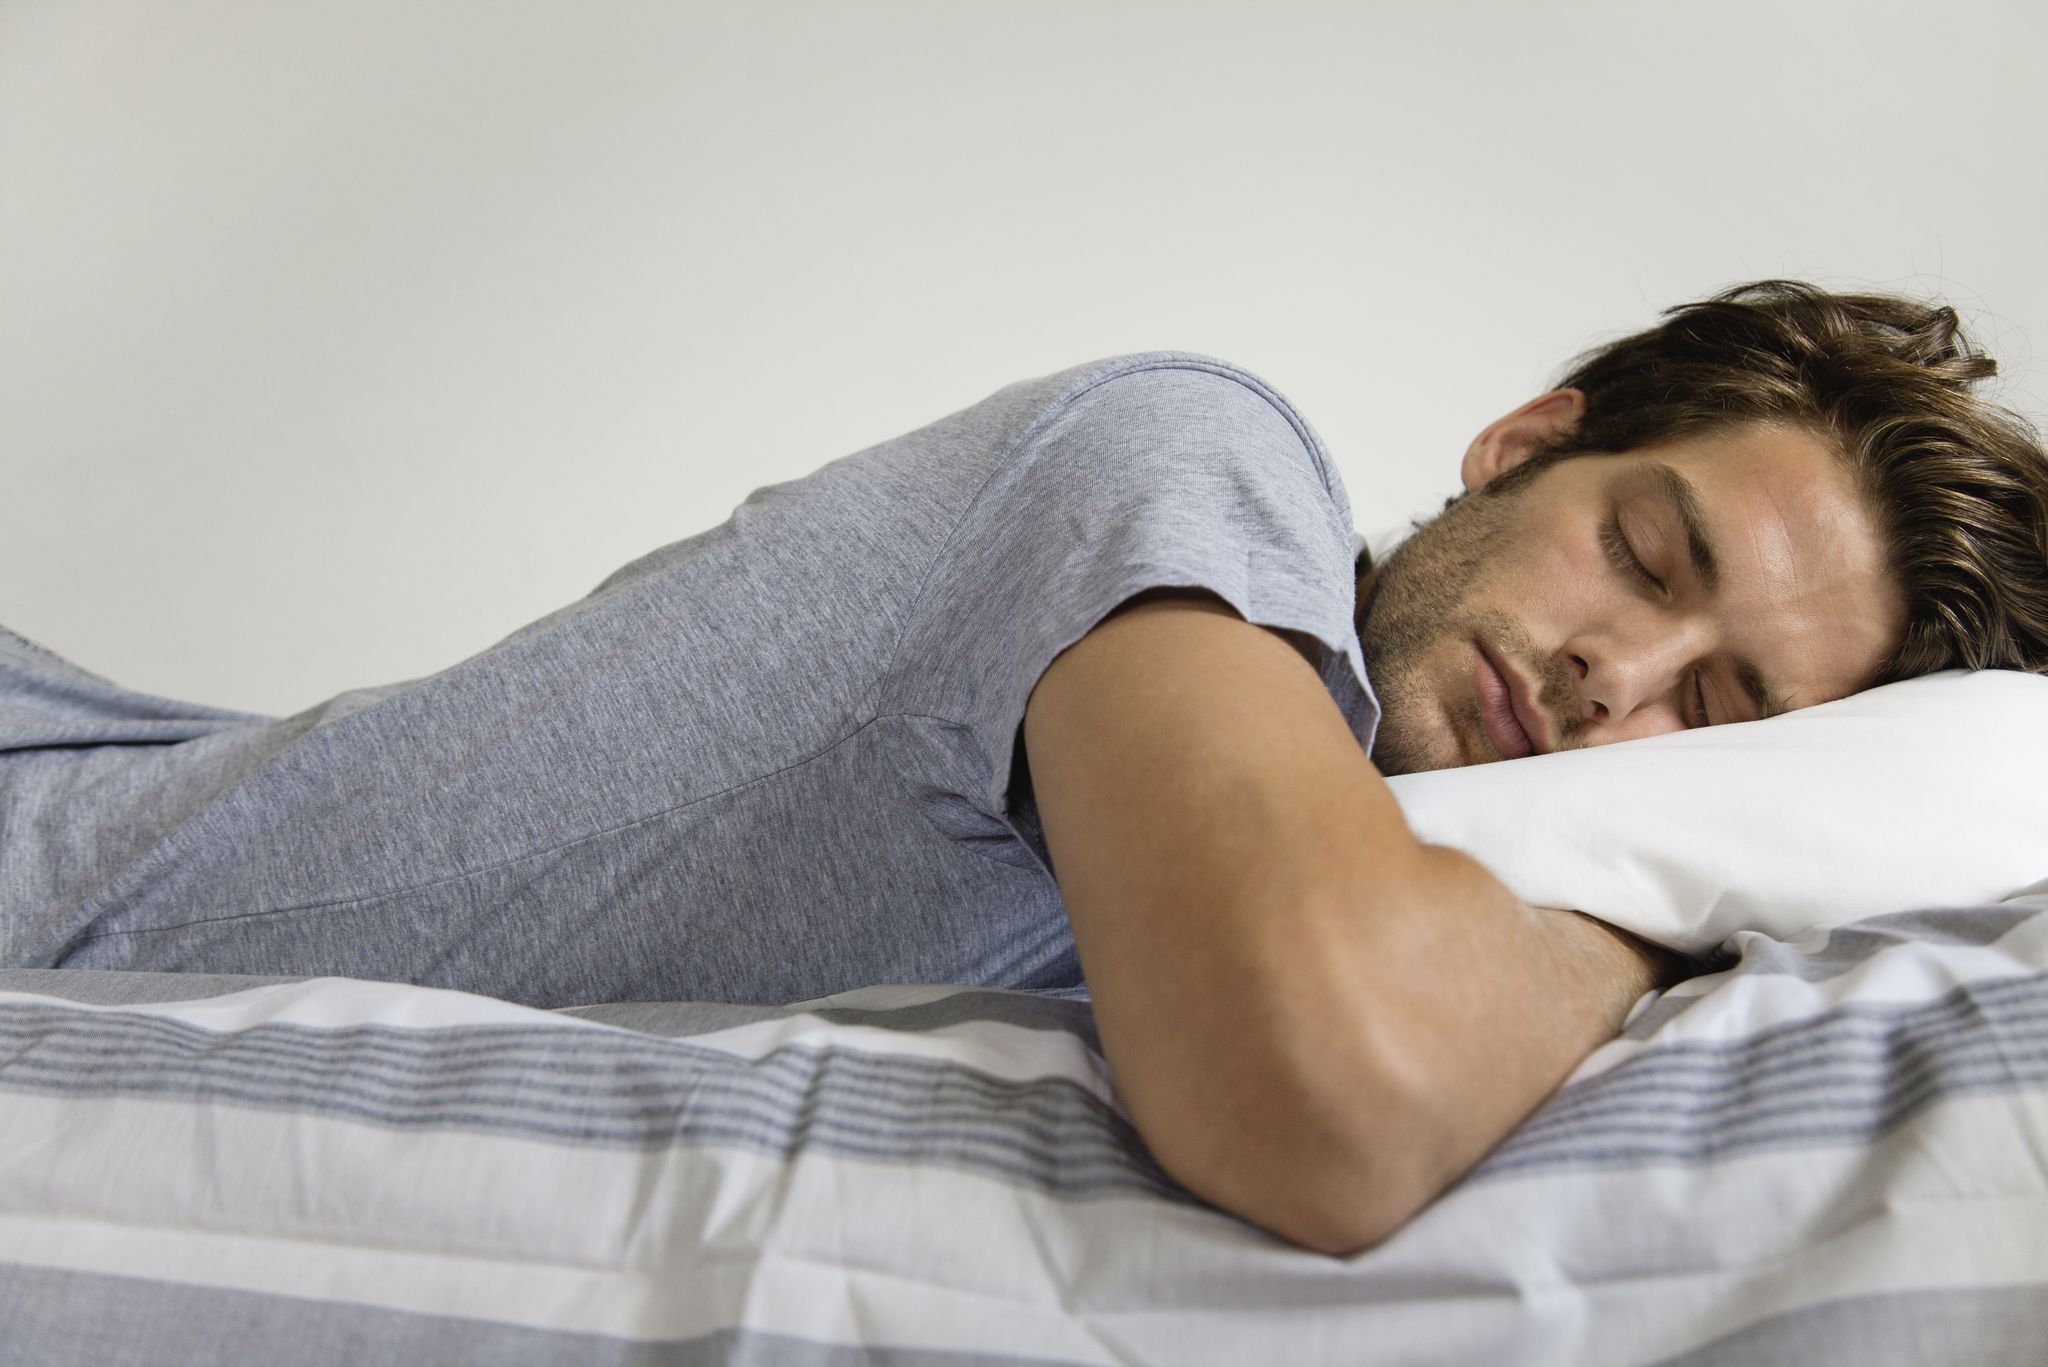 Sudar al dormir es normal? Por qué ocurre y cómo evitarlo